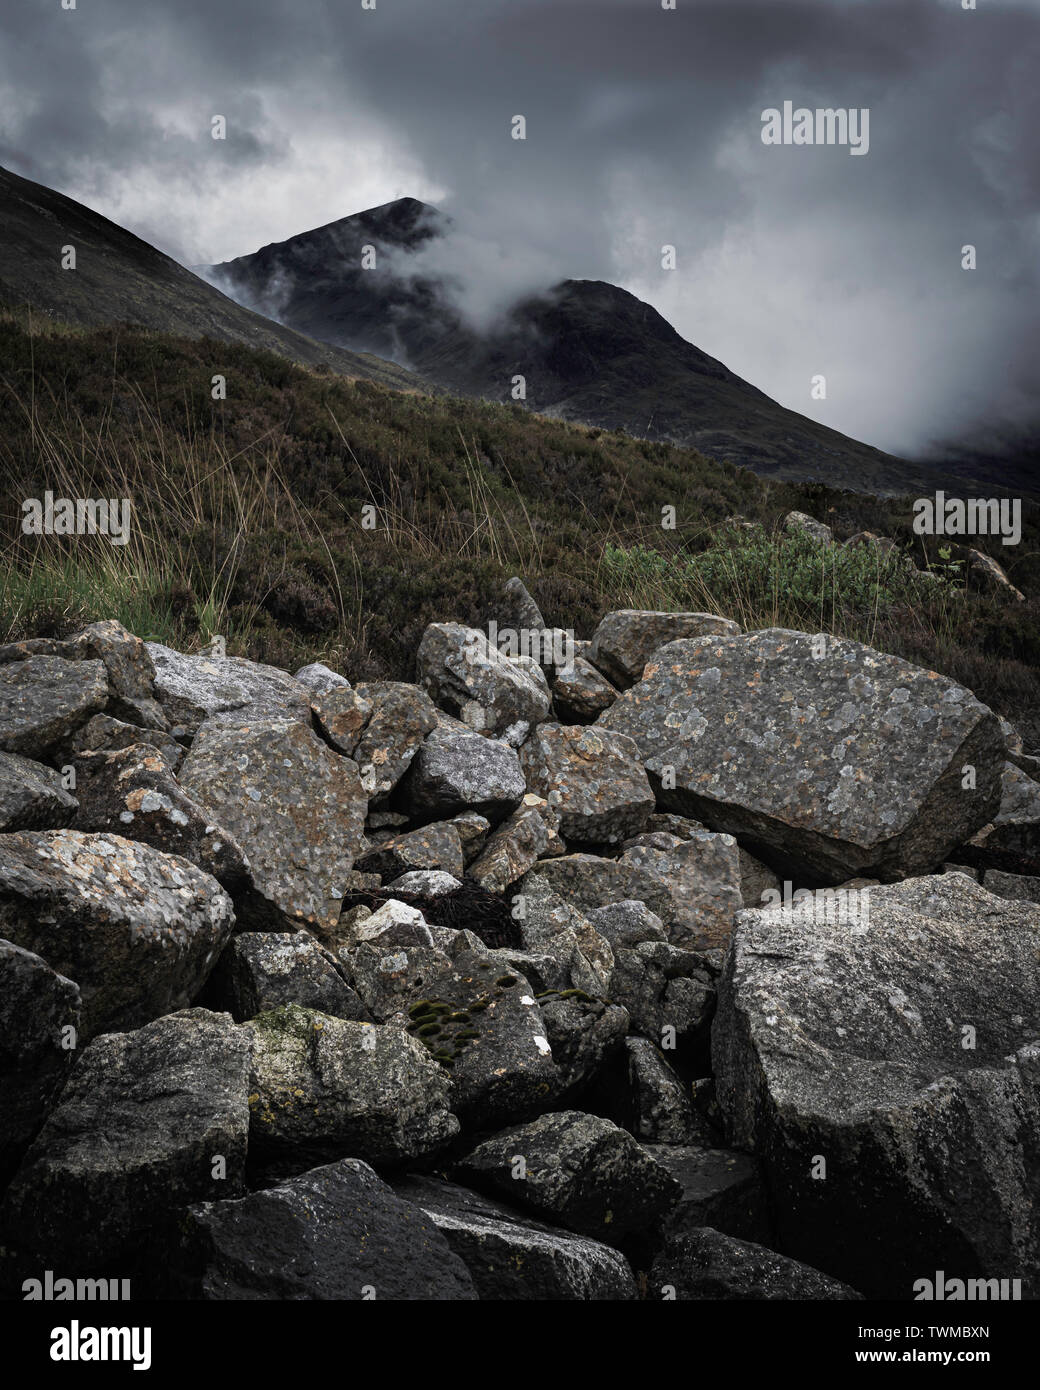 Wolken über Gipfel und Felsen im Vordergrund. Dramatische Landschaft der Insel Skye, Schottland. Dunkle natur Bild mit atmosphärische Stimmung. Stockfoto